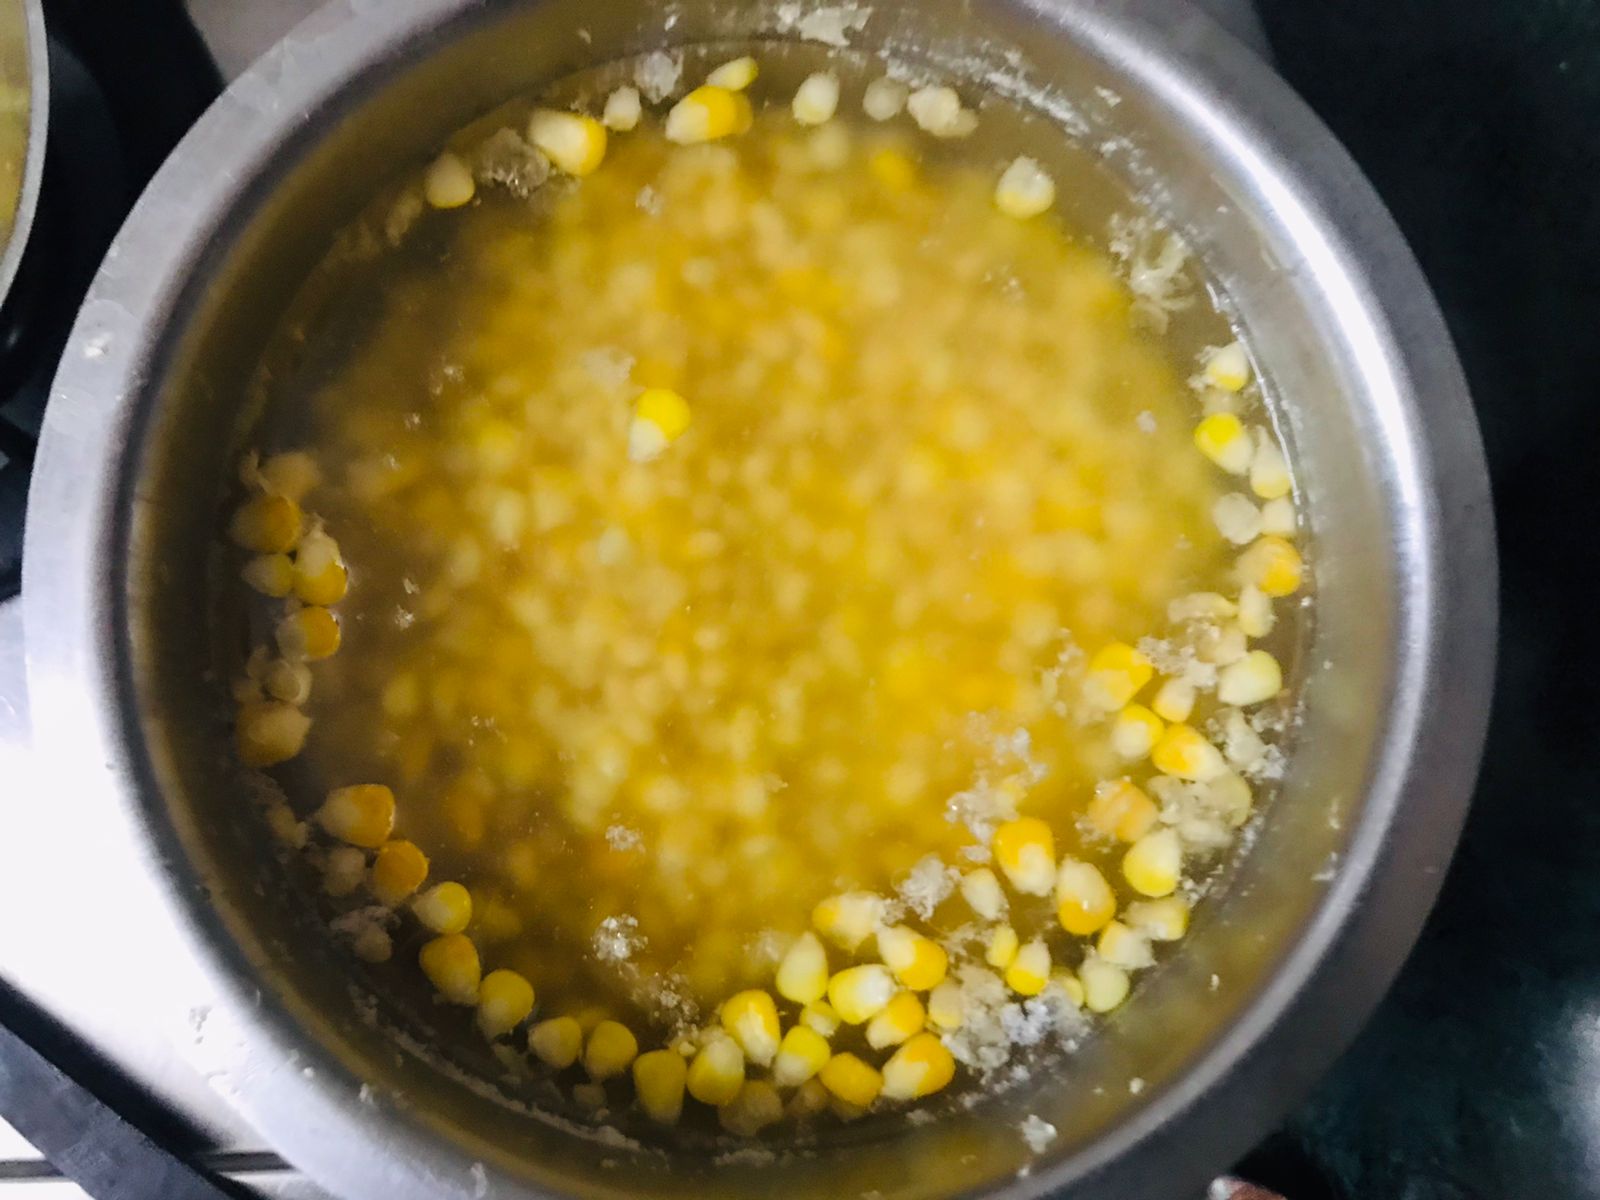 Crispy Masala Corn Recipe